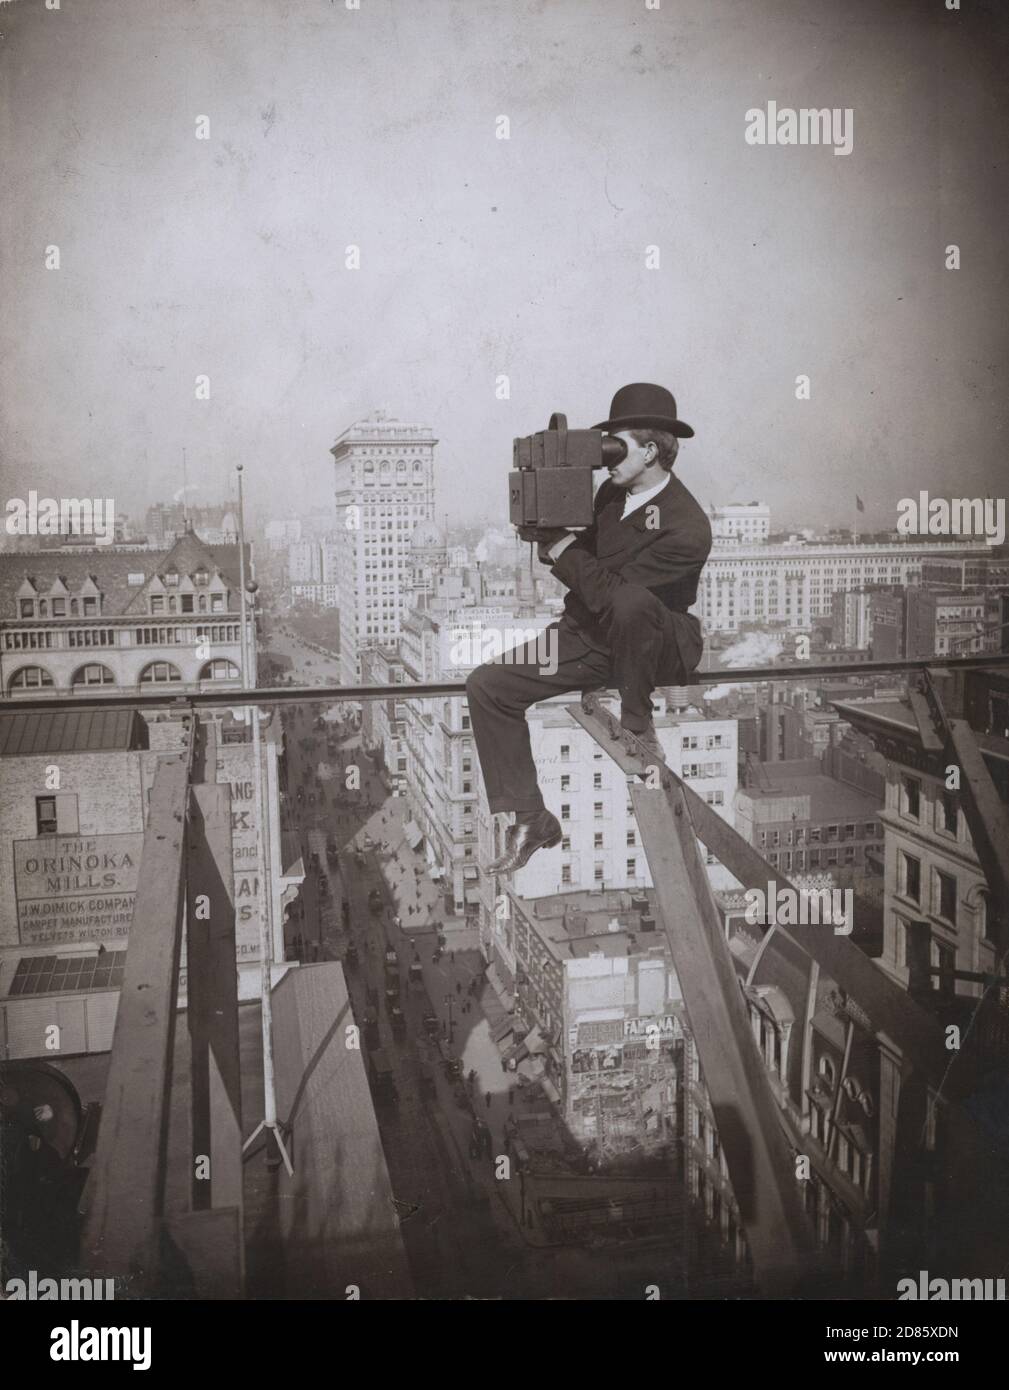 Foto vintage Underwood y Underwood - por encima de la Quinta Avenida, mirando hacia el norte Foto de stock